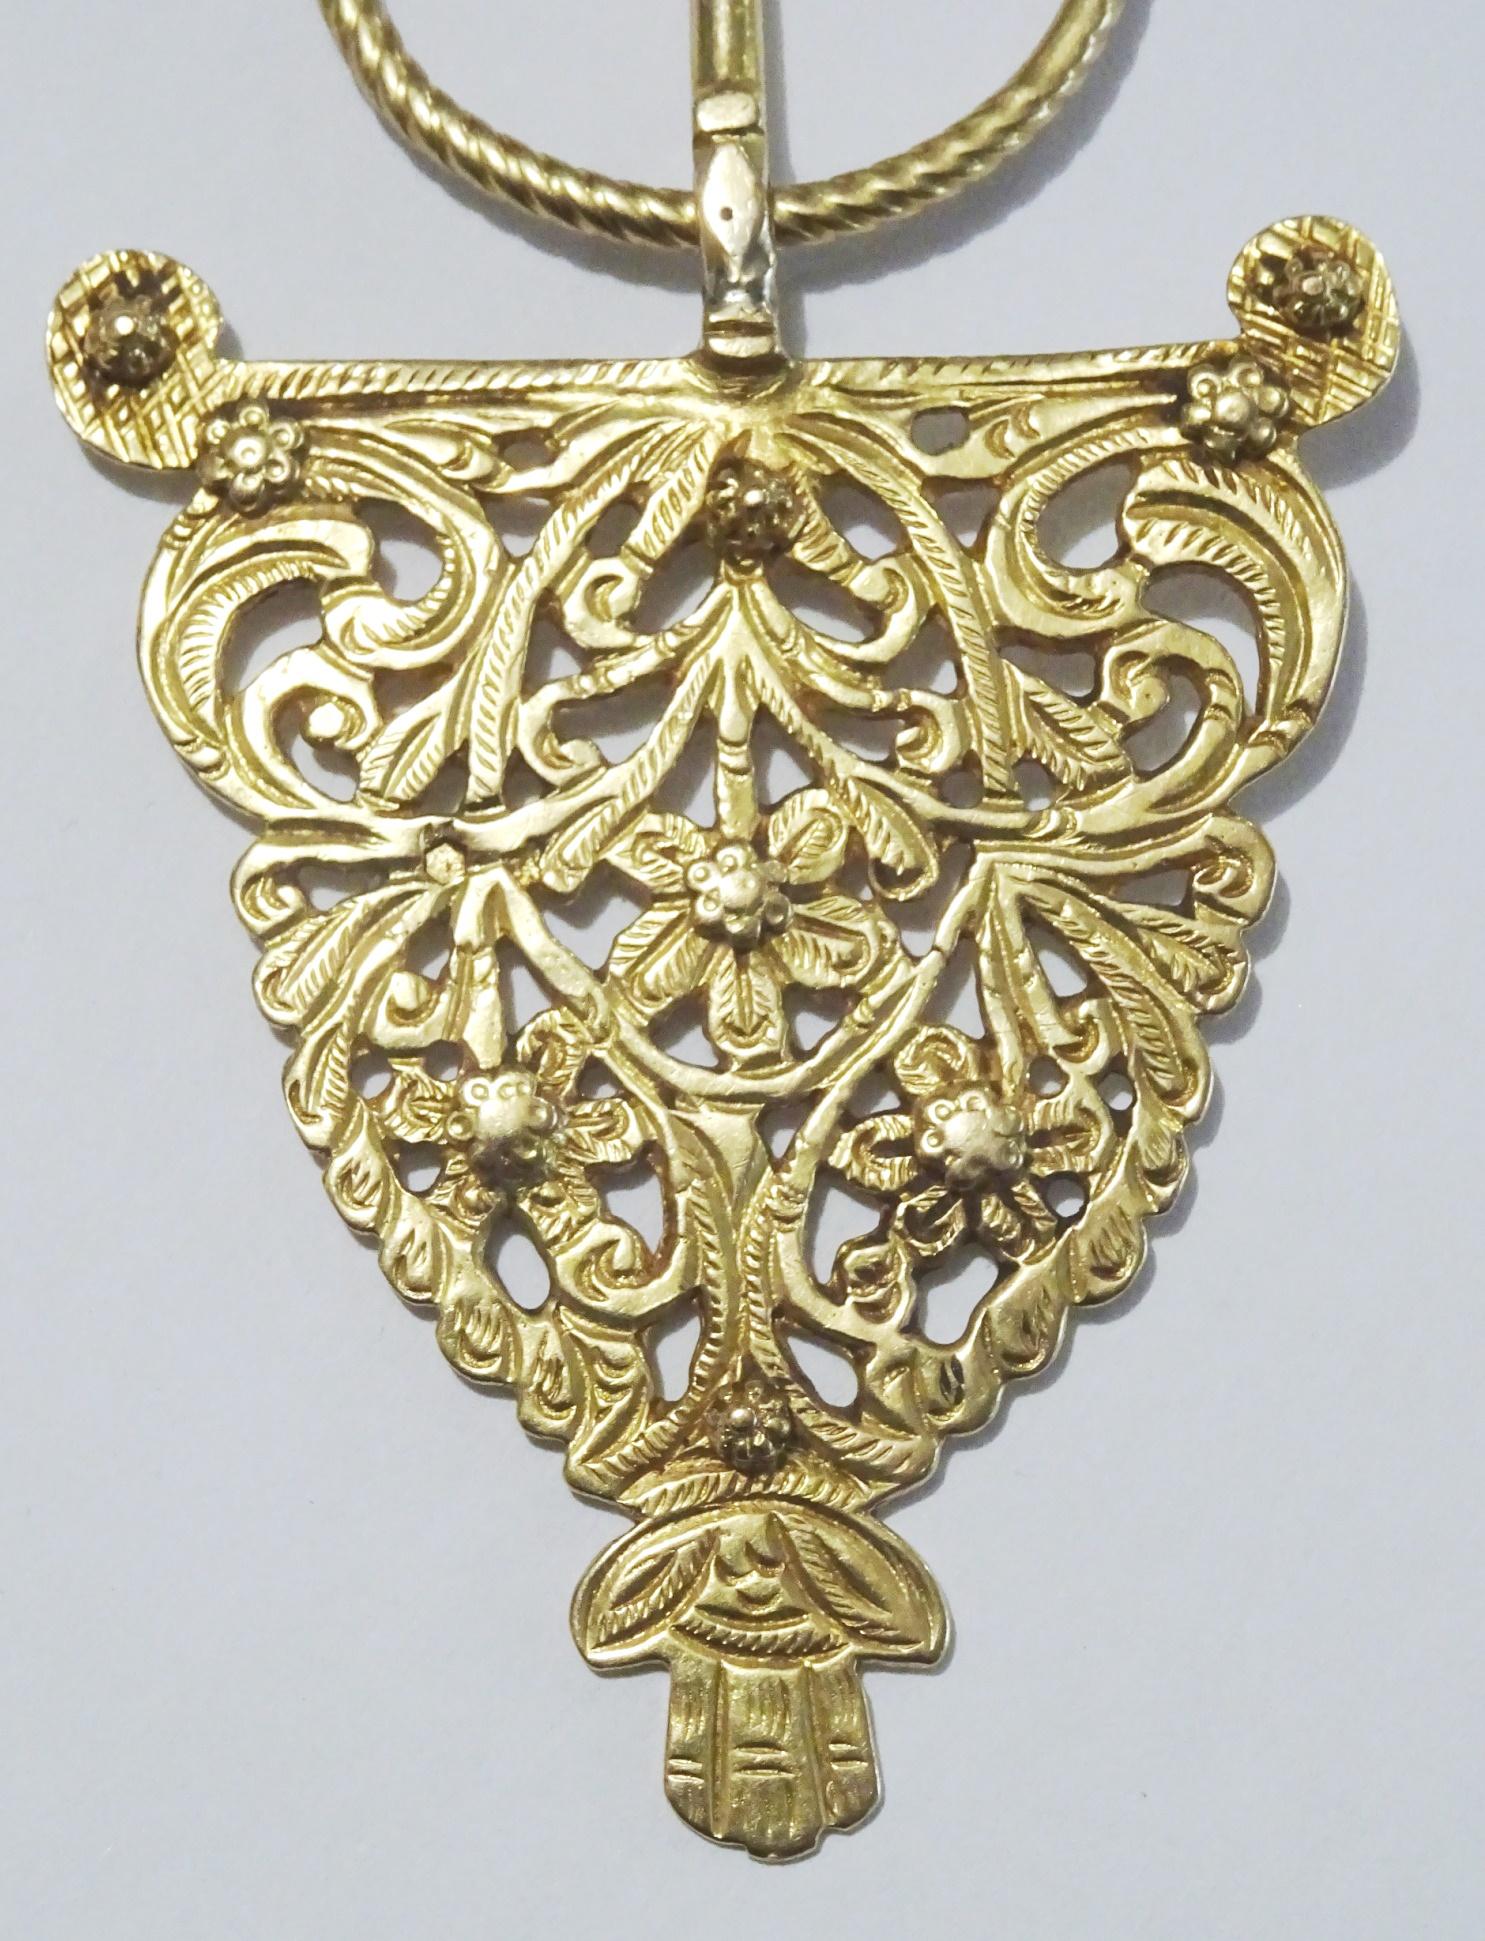 
Une pièce rare et originale, une fibule en or 21 carats provenant d'Afrique du Nord (Maroc, Algérie). Le péroné est en fait un bouton ou une épingle à nourrice qui maintient deux pièces de vêtement ensemble. En Afrique du Nord, les femmes berbères